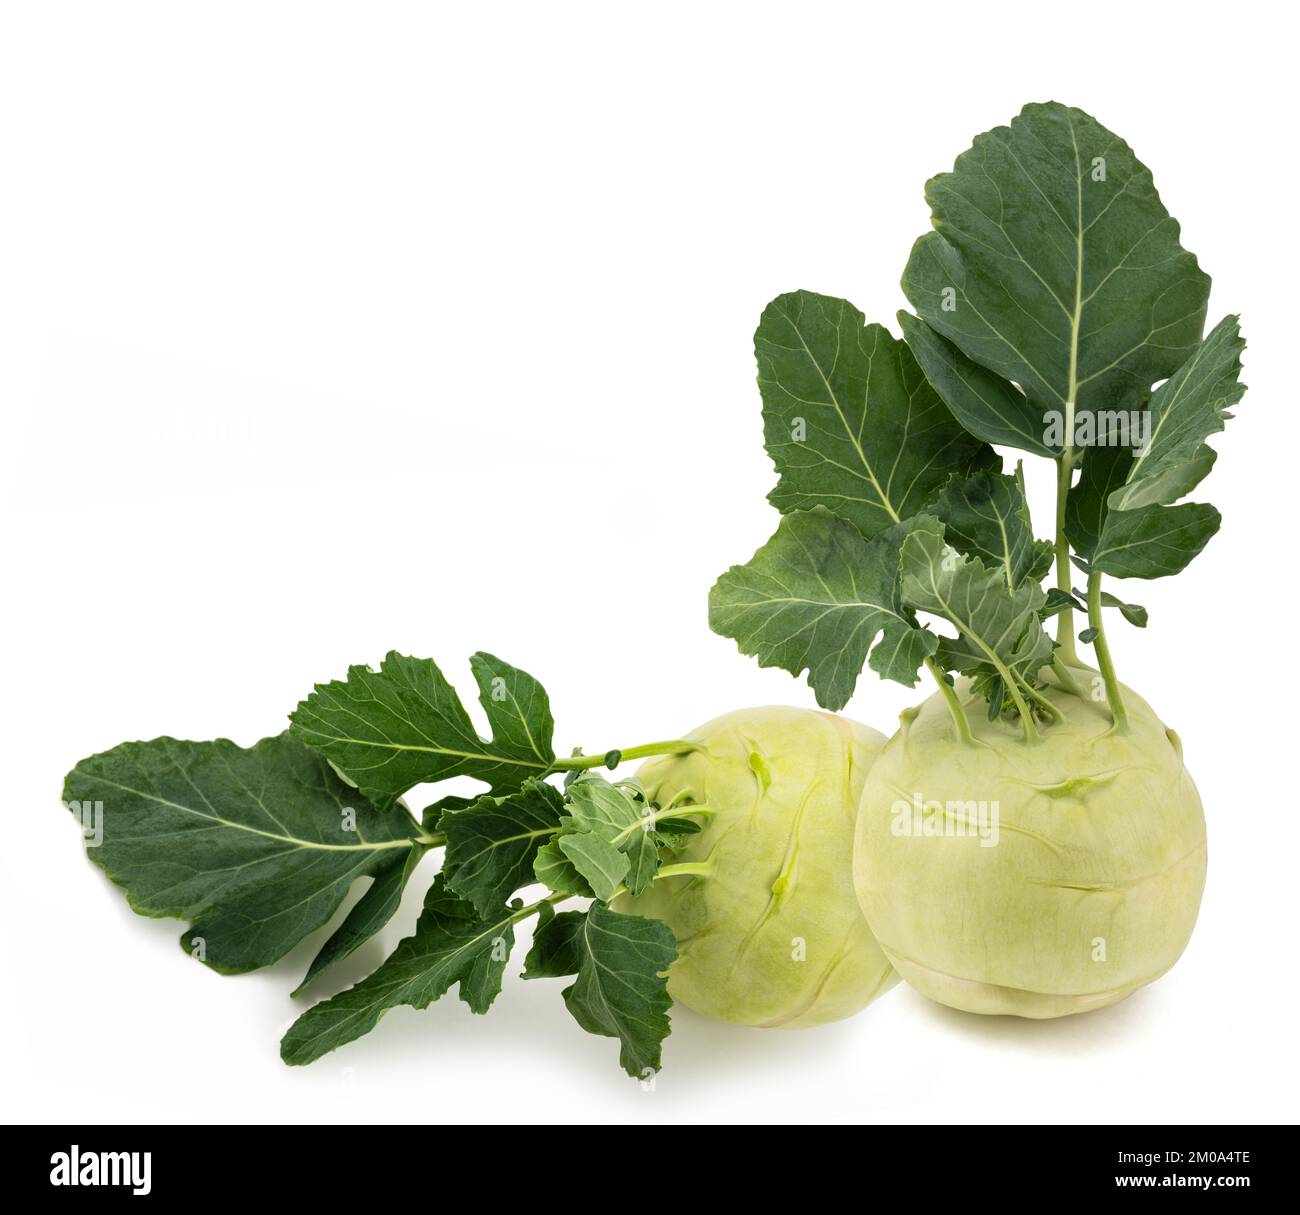 Fresh Cabbage turnip isolated on white background Stock Photo